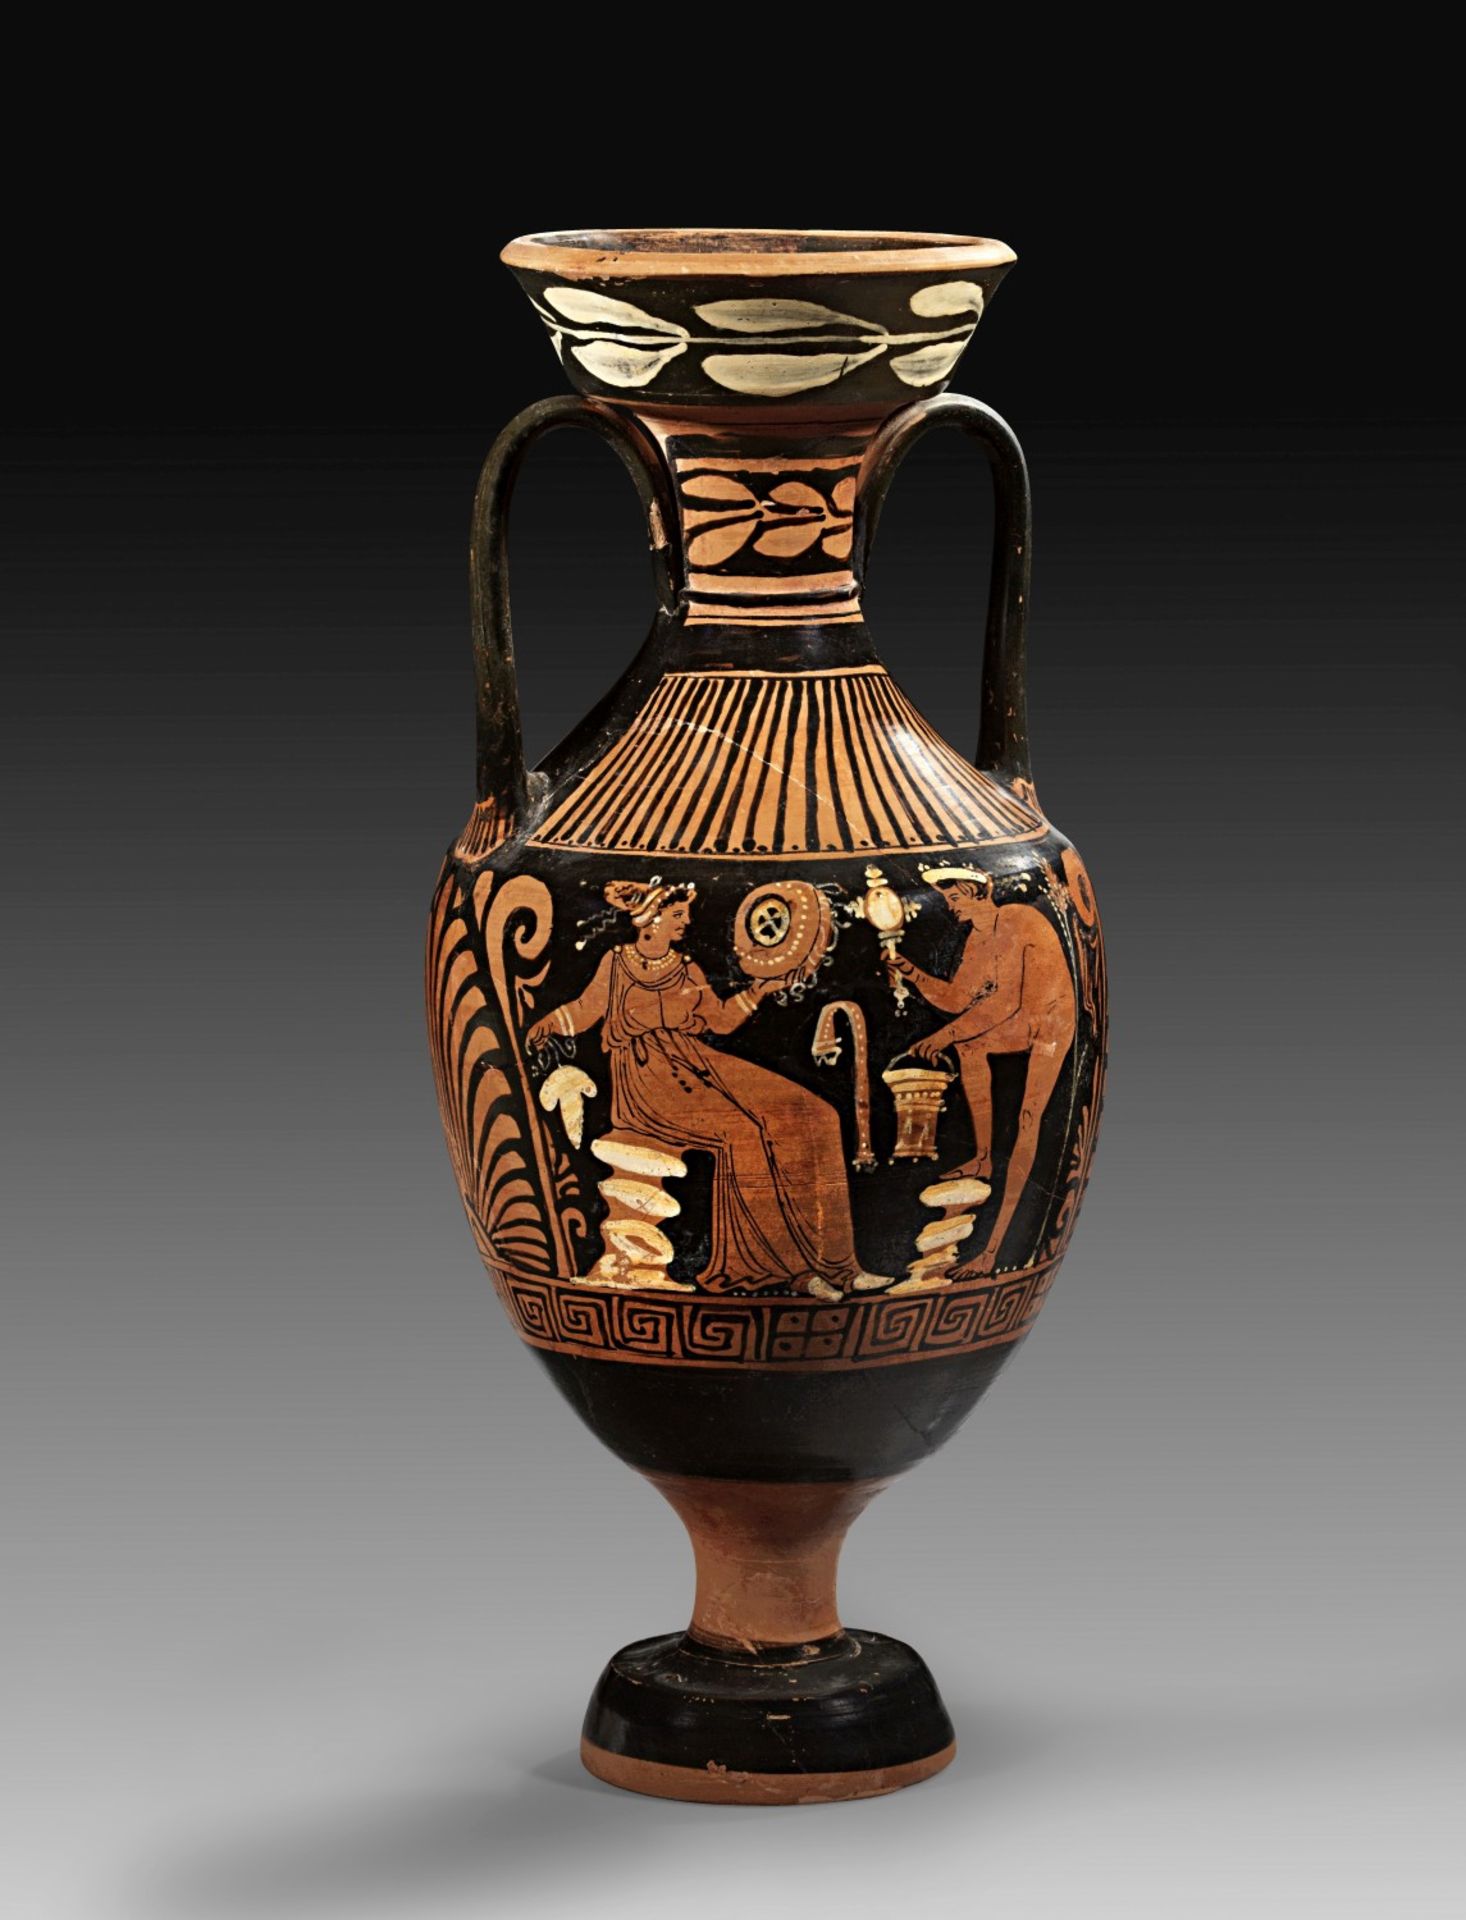 Apulische Amphora des Patera-Malers. - Bild 2 aus 2